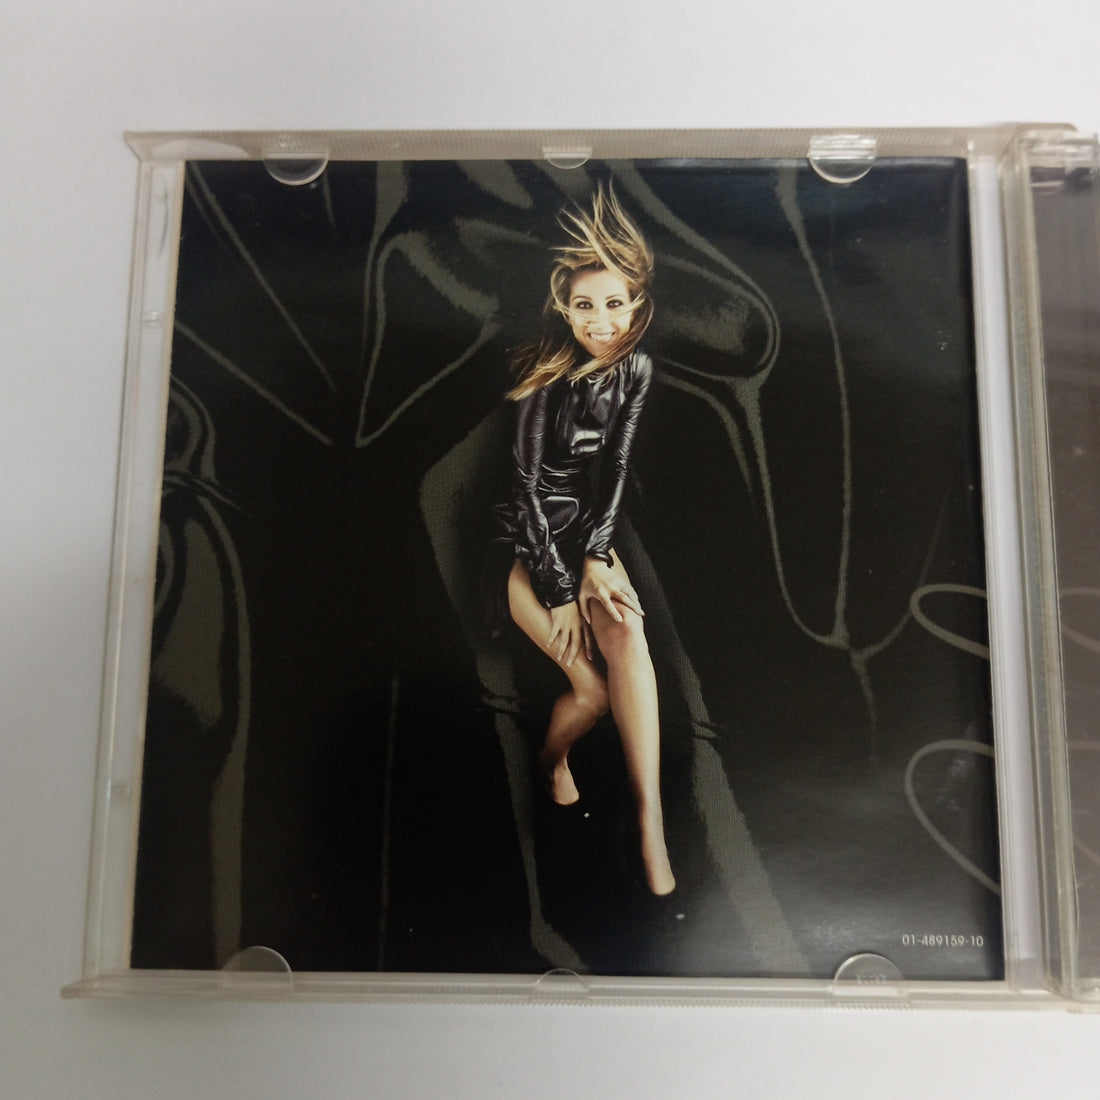 Céline Dion - Let's Talk About Love (CD) (VG+)